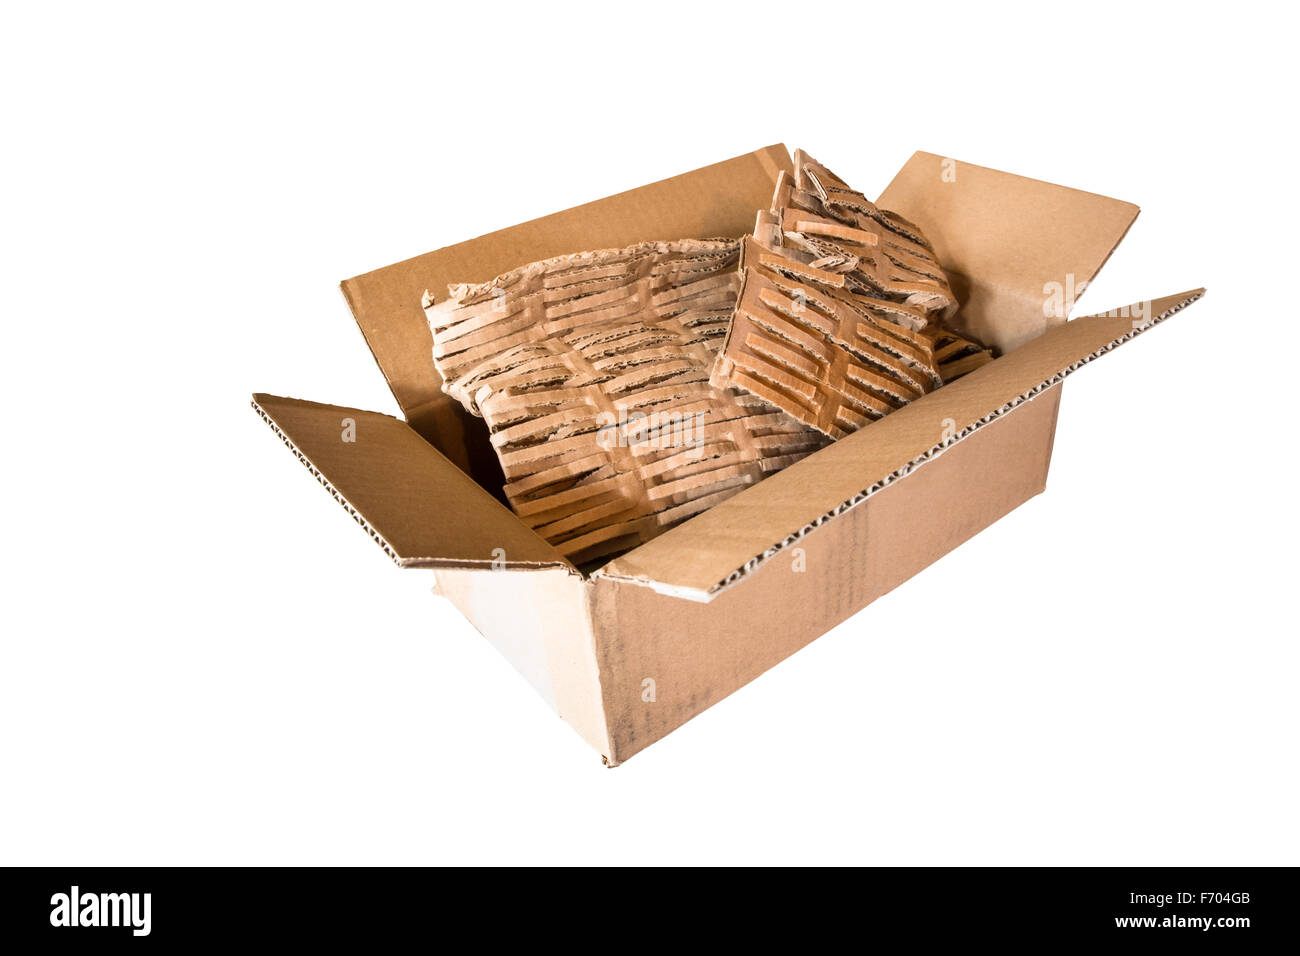 Abrir la caja de envío de cartón vacío con material de embalaje ecológico aislado sobre fondo blanco. Foto de stock